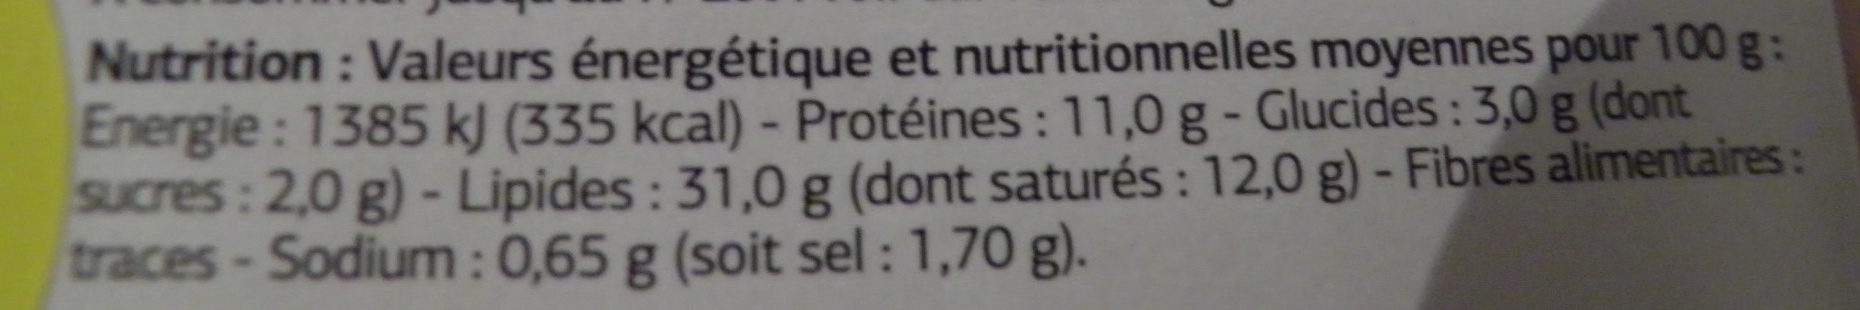 Pâté de foie de porc qualité supérieure - Nutrition facts - fr